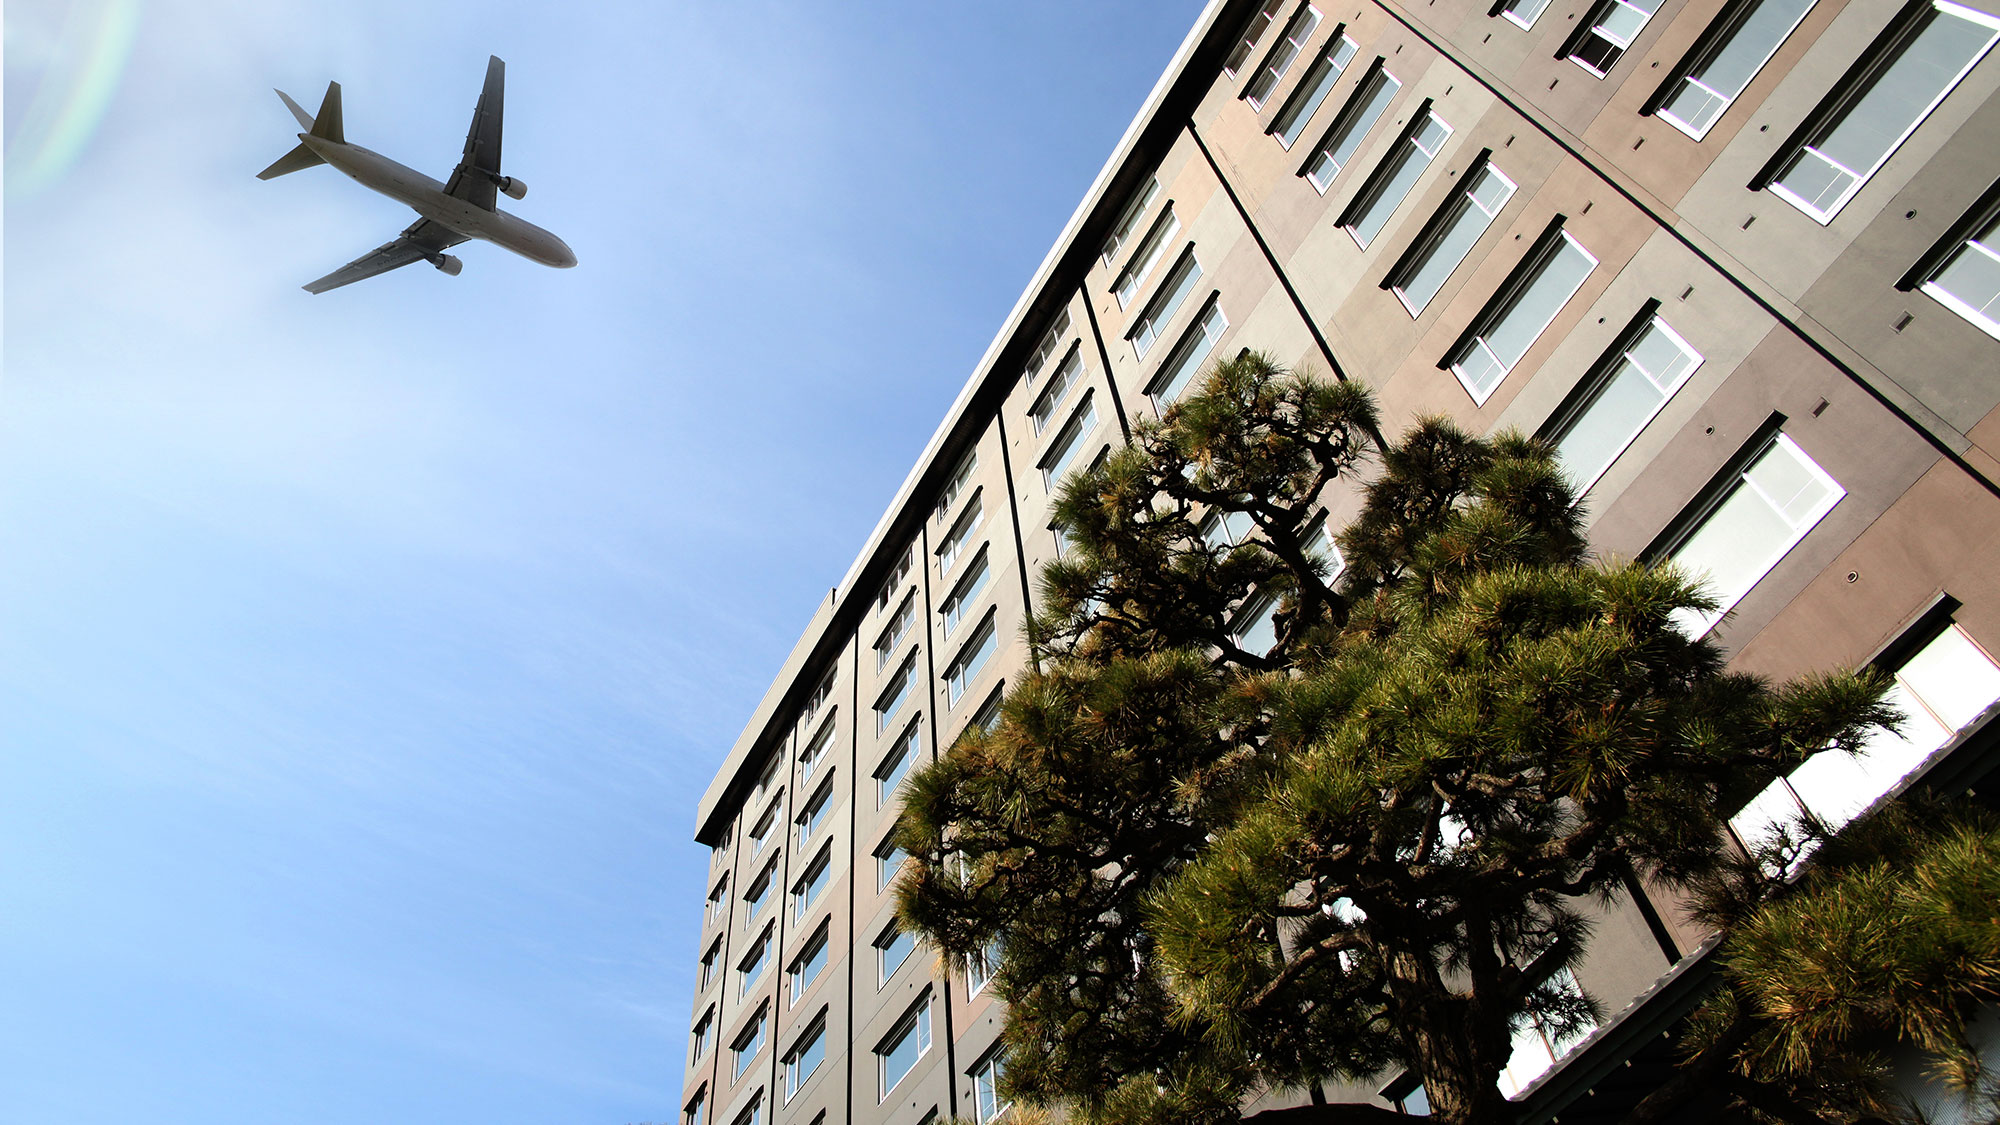 【外観】当館の真上を通過する飛行機。函館空港から近くの立地の為、着陸する飛行機がすぐ真上を通ります